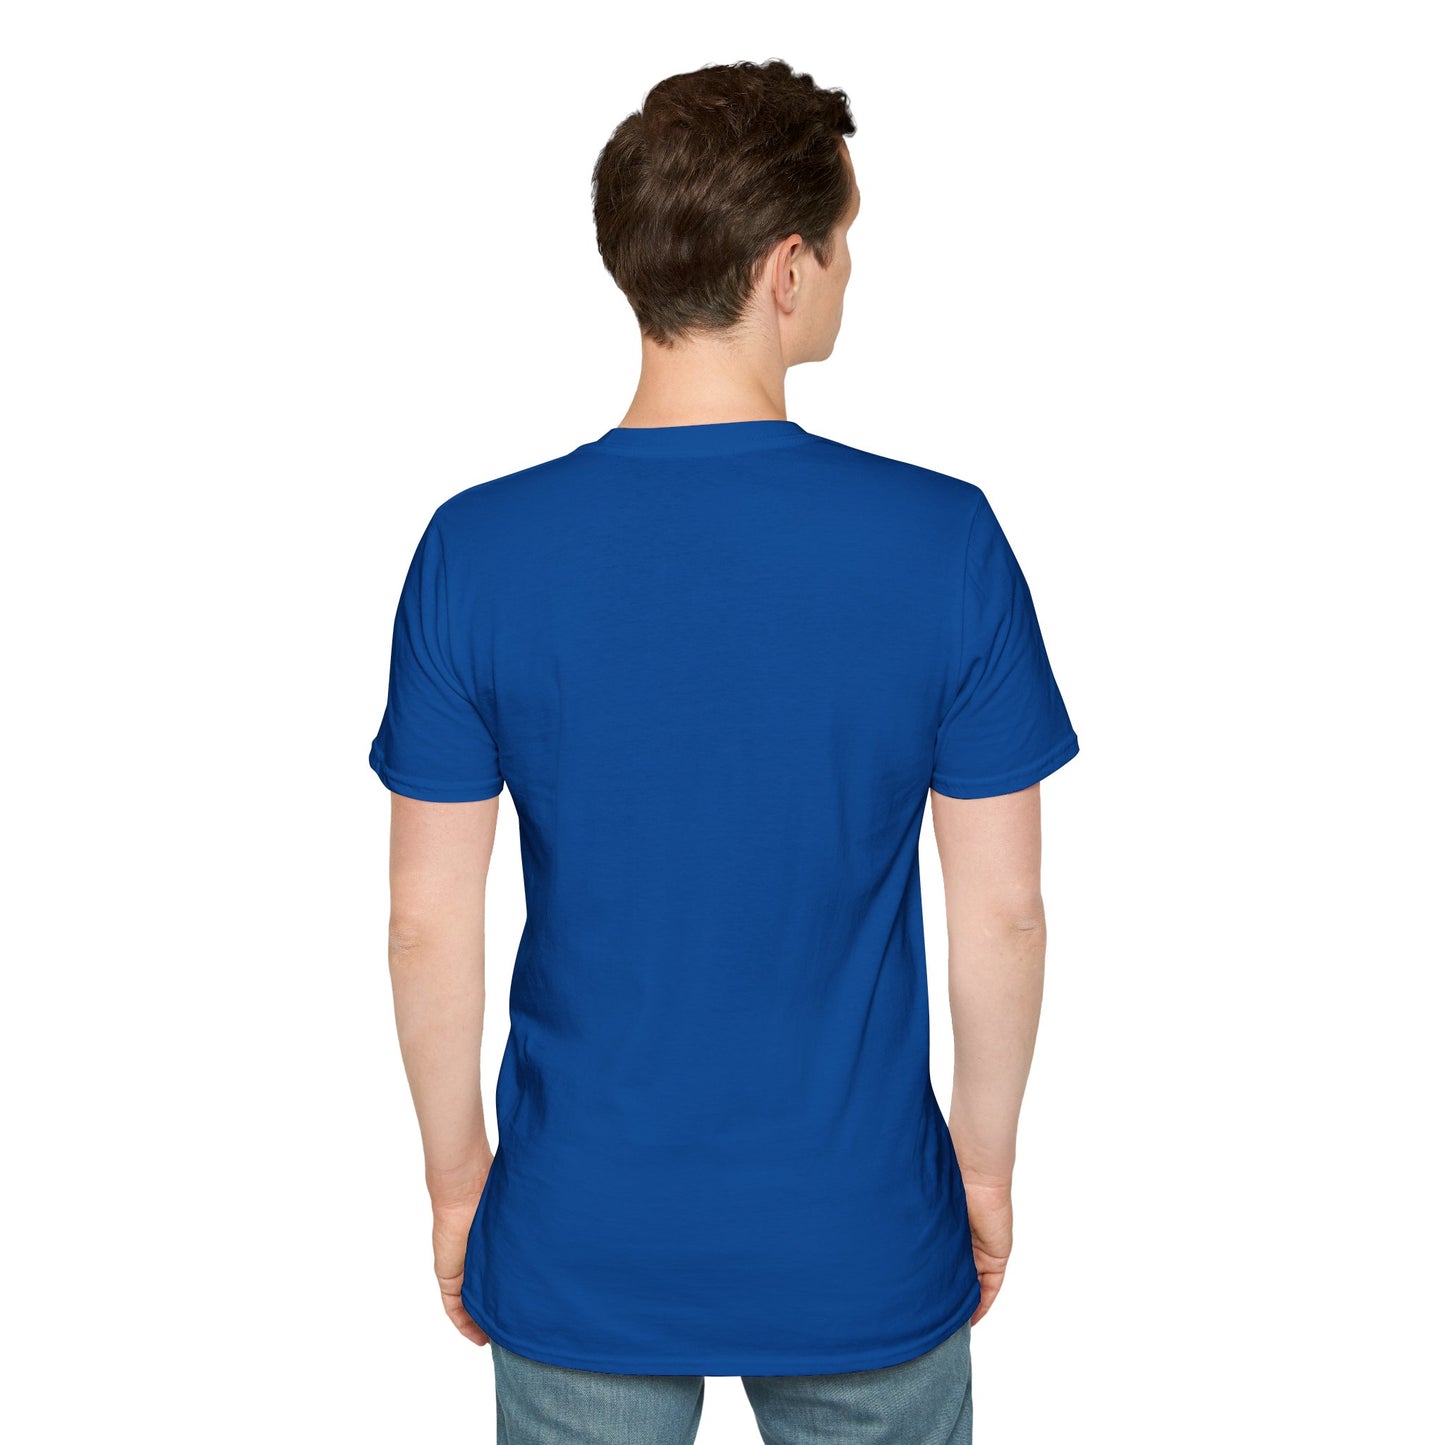 LCAM-14 Unisex Softstyle T-Shirt